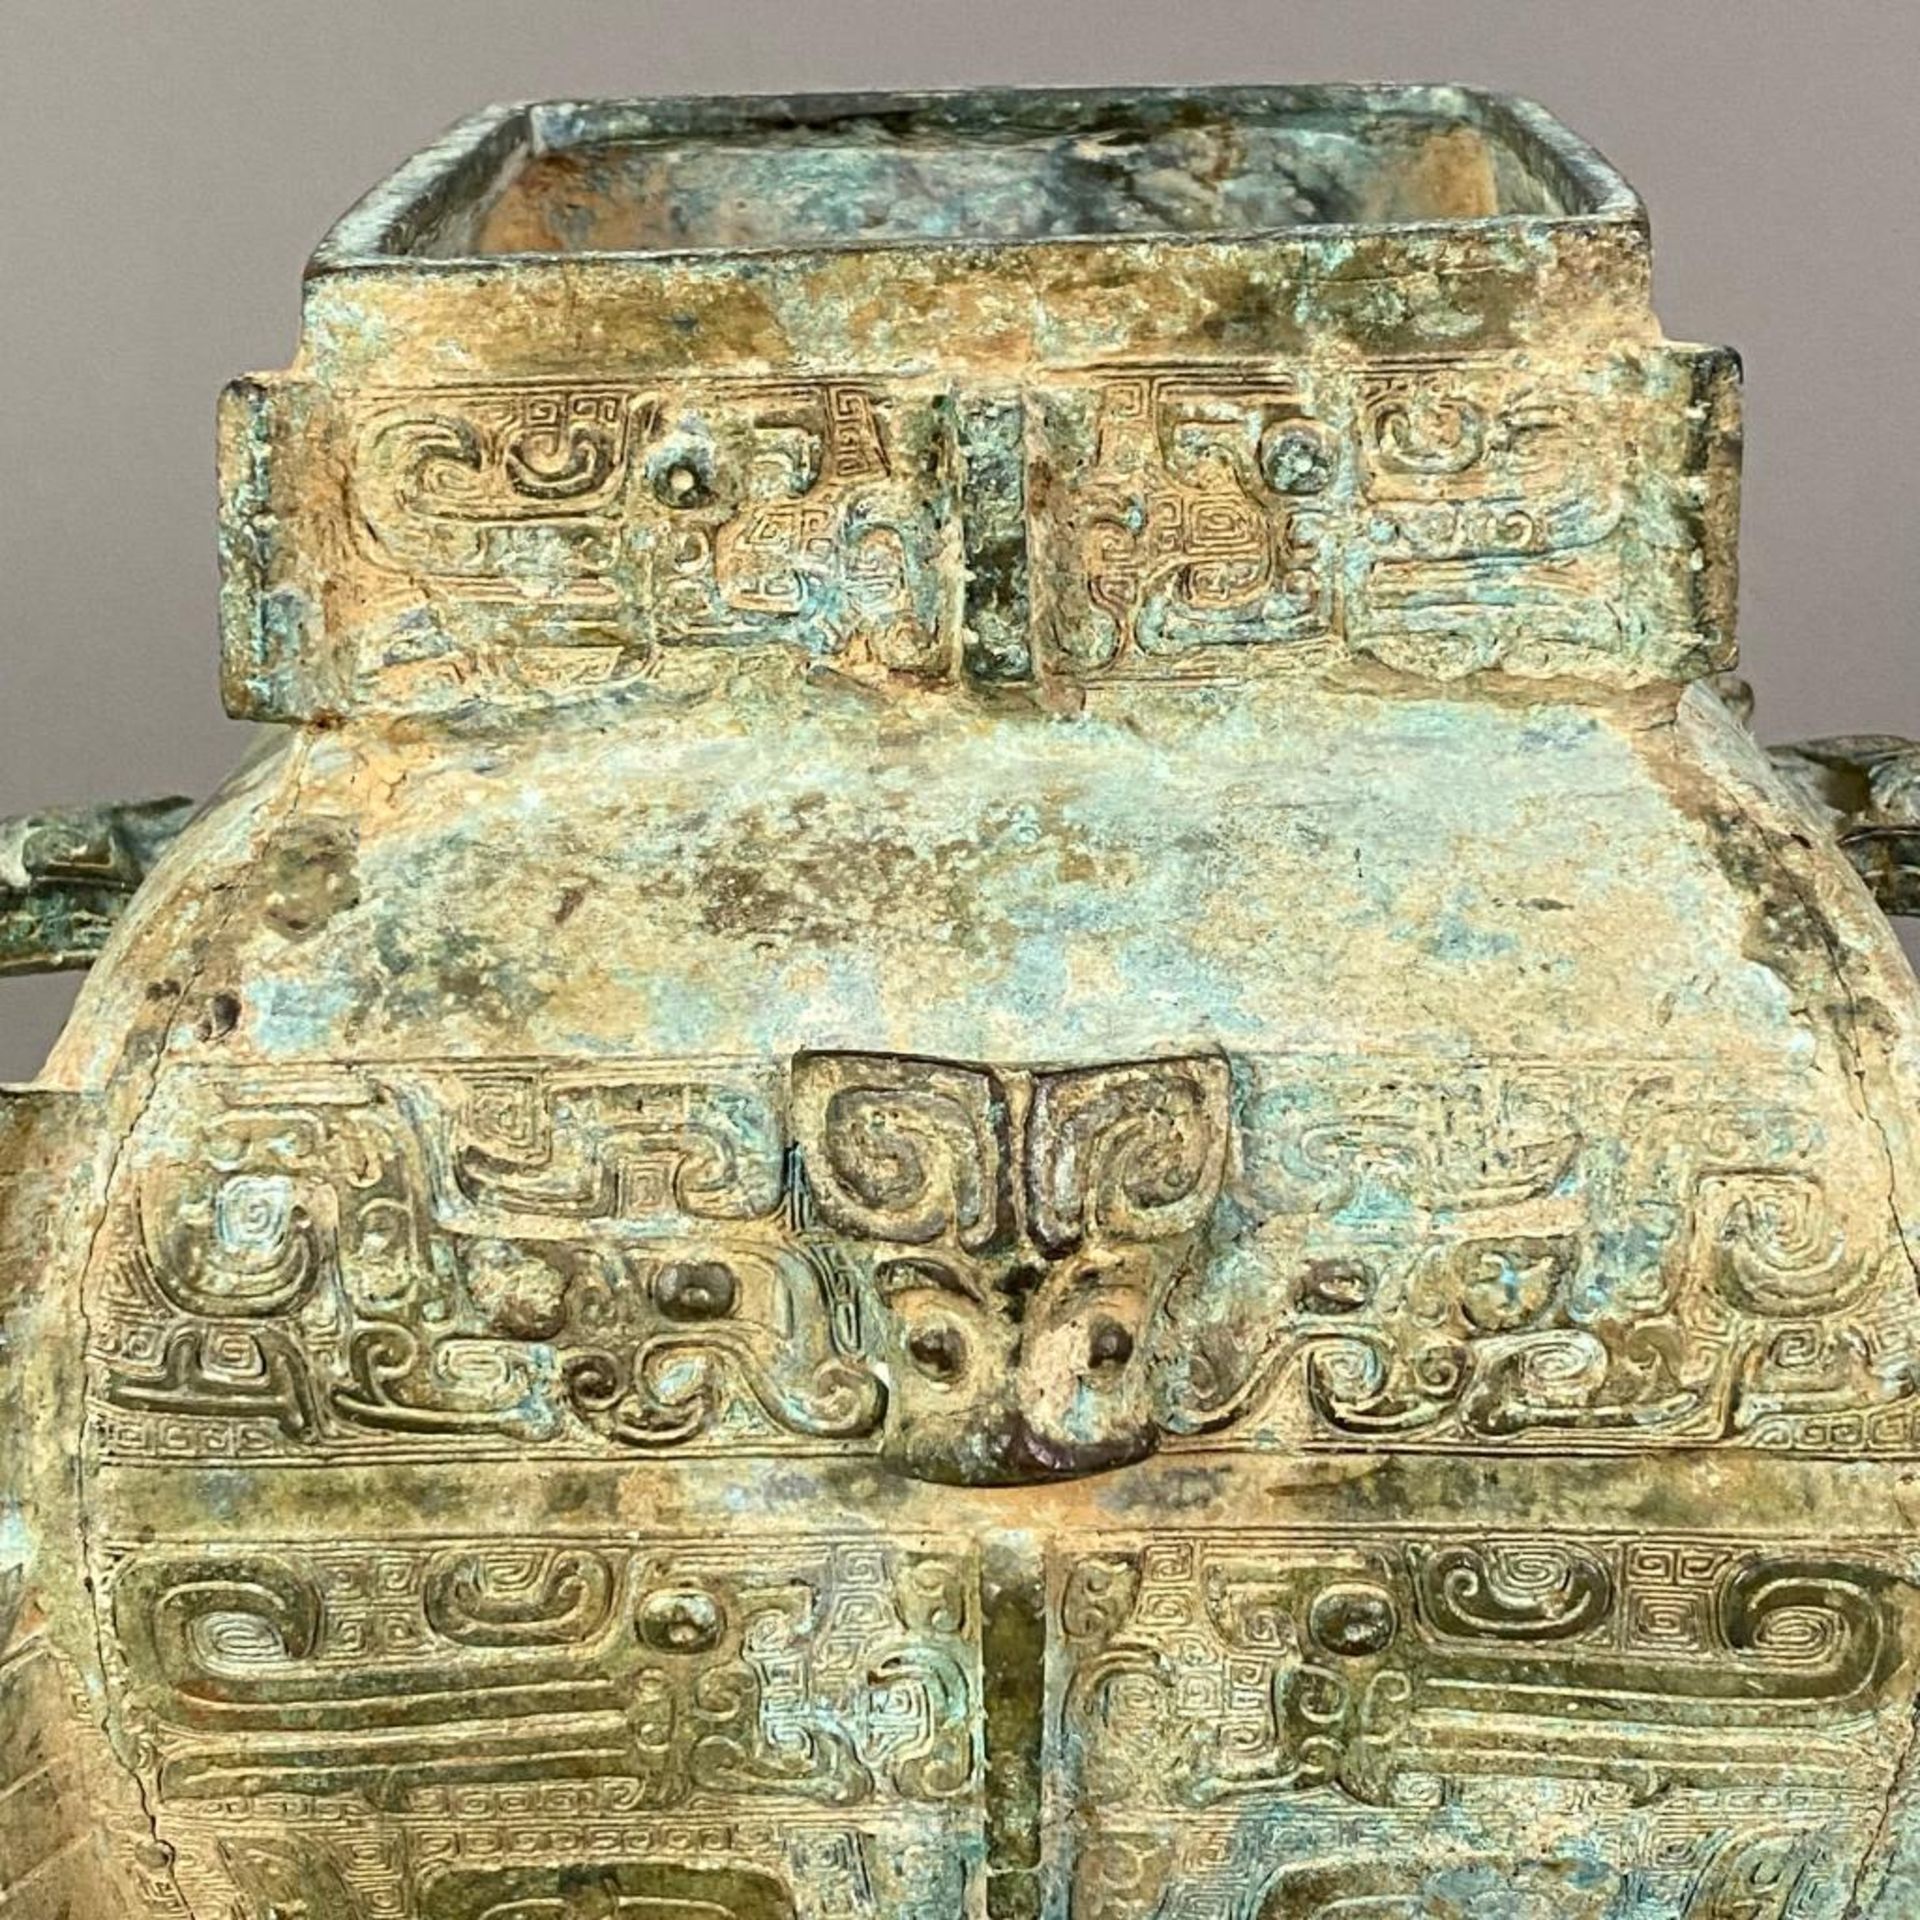 Fanghu-Vase im archaischen Stil - China, grün-braun patinierte Bronze, vierkantige gebauchte Form a - Bild 4 aus 10